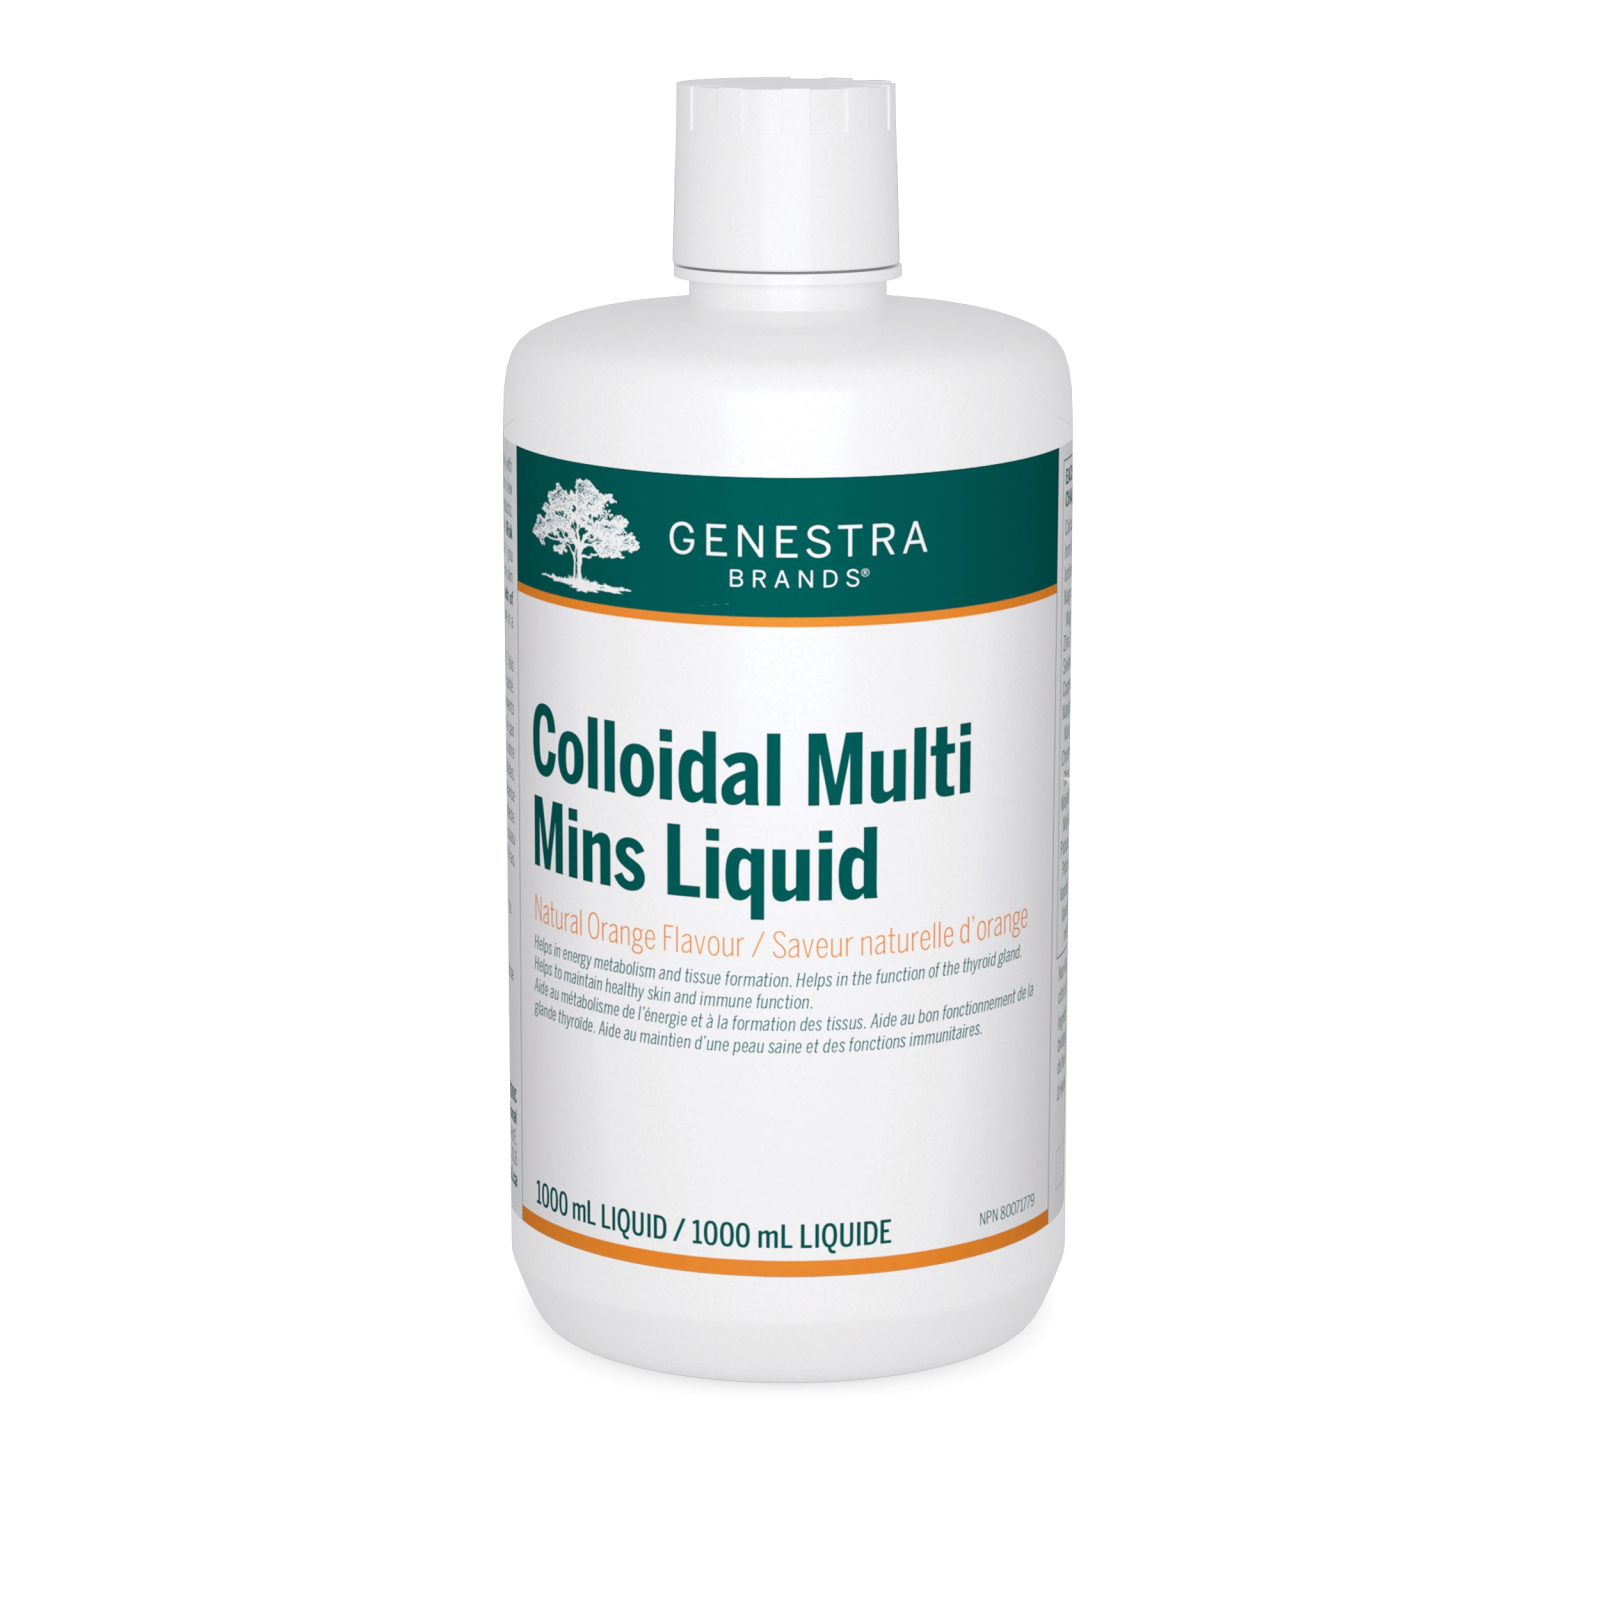 Genestra Colloidal Multi Mins Liquid (1000mL)